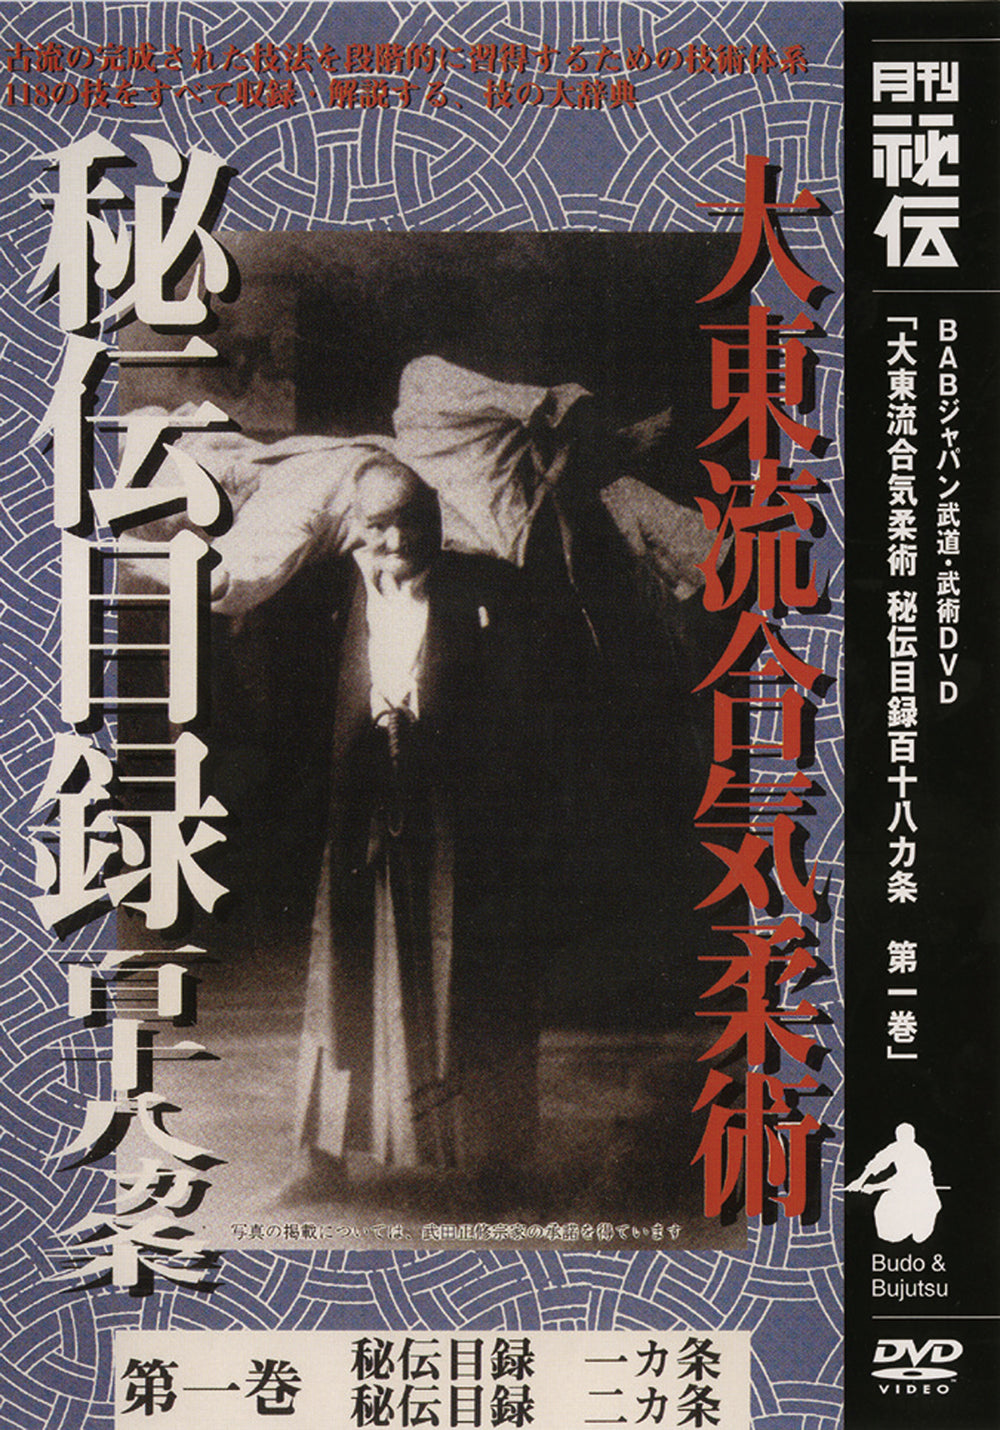 大東流合気柔術 秘伝目録 DVD Vol 1